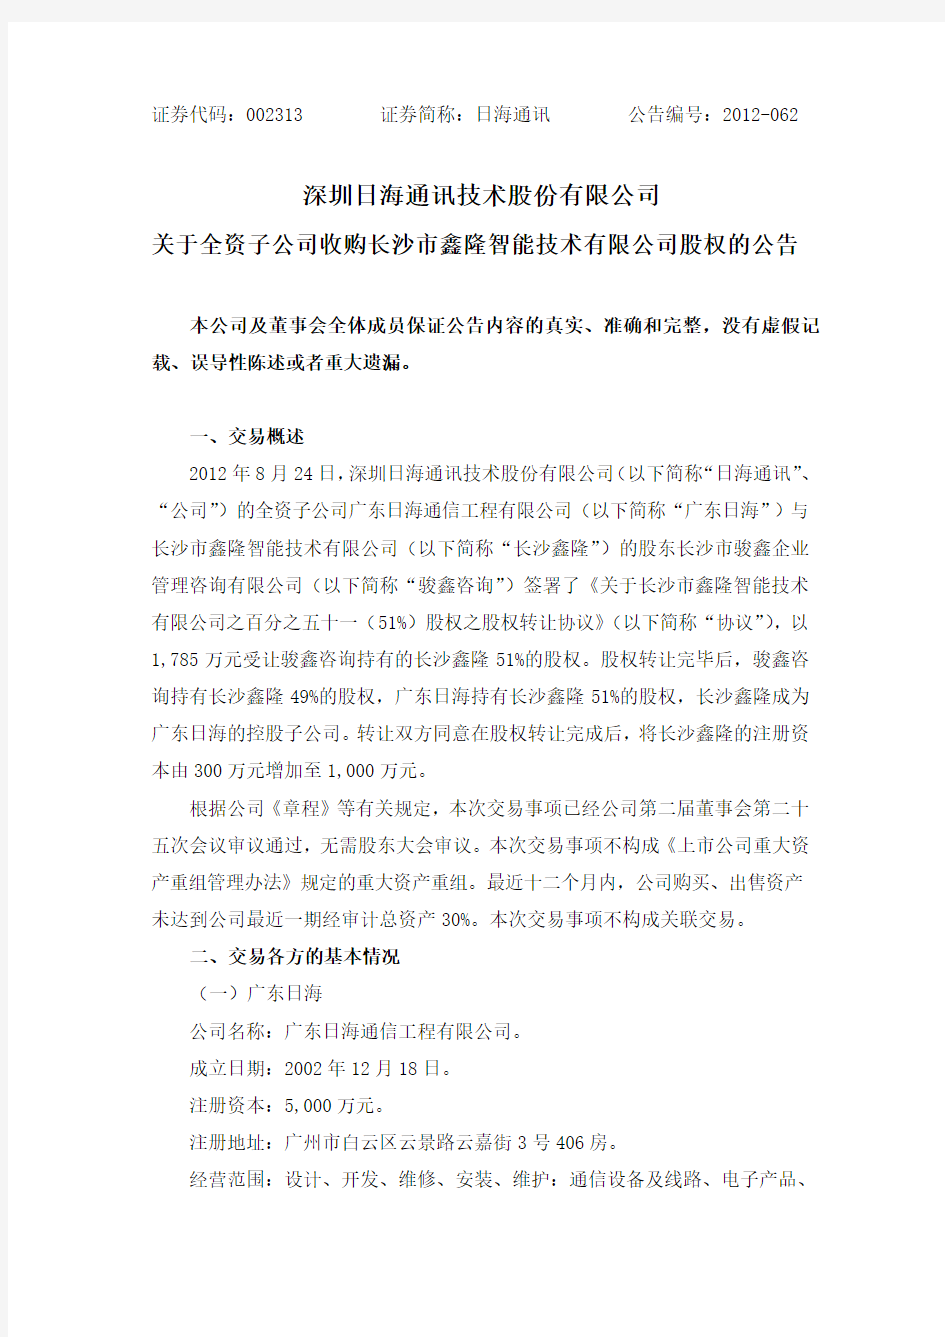 日海通讯关于全资子公司收购长沙市鑫隆智能技术有限公司股权的公告